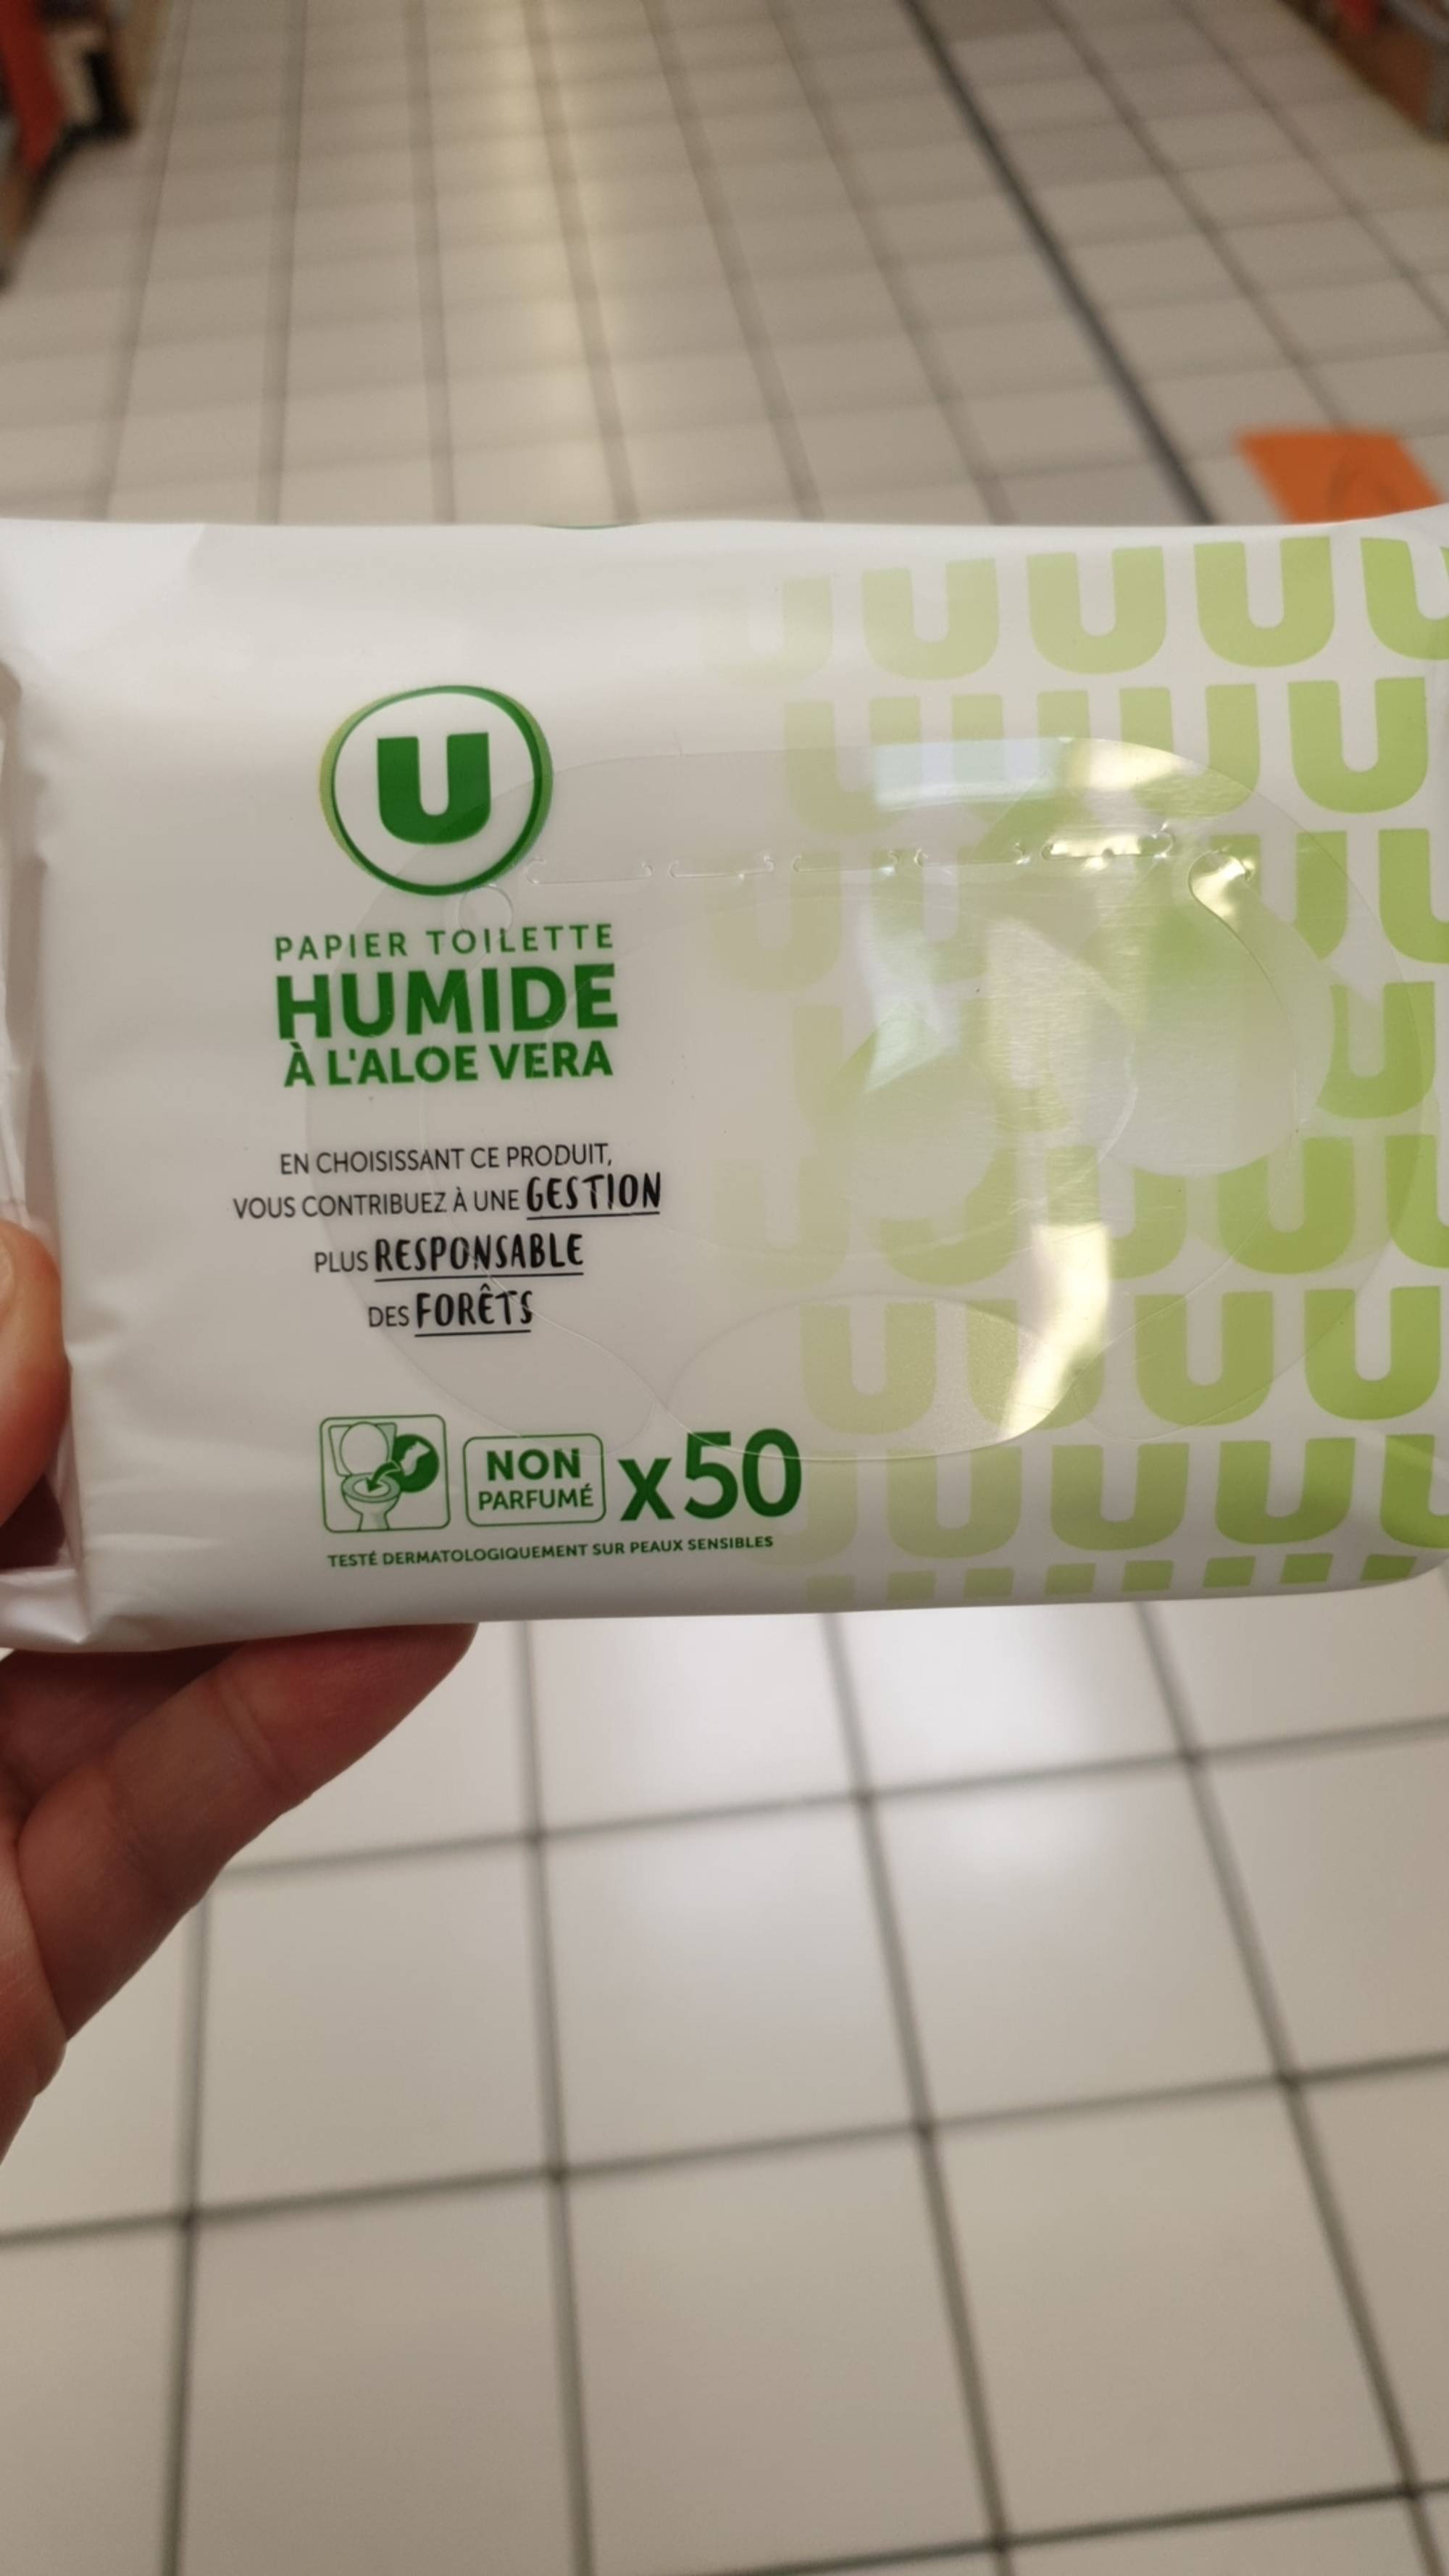 Composition FESSNETT Papier toilette humide kids - UFC-Que Choisir